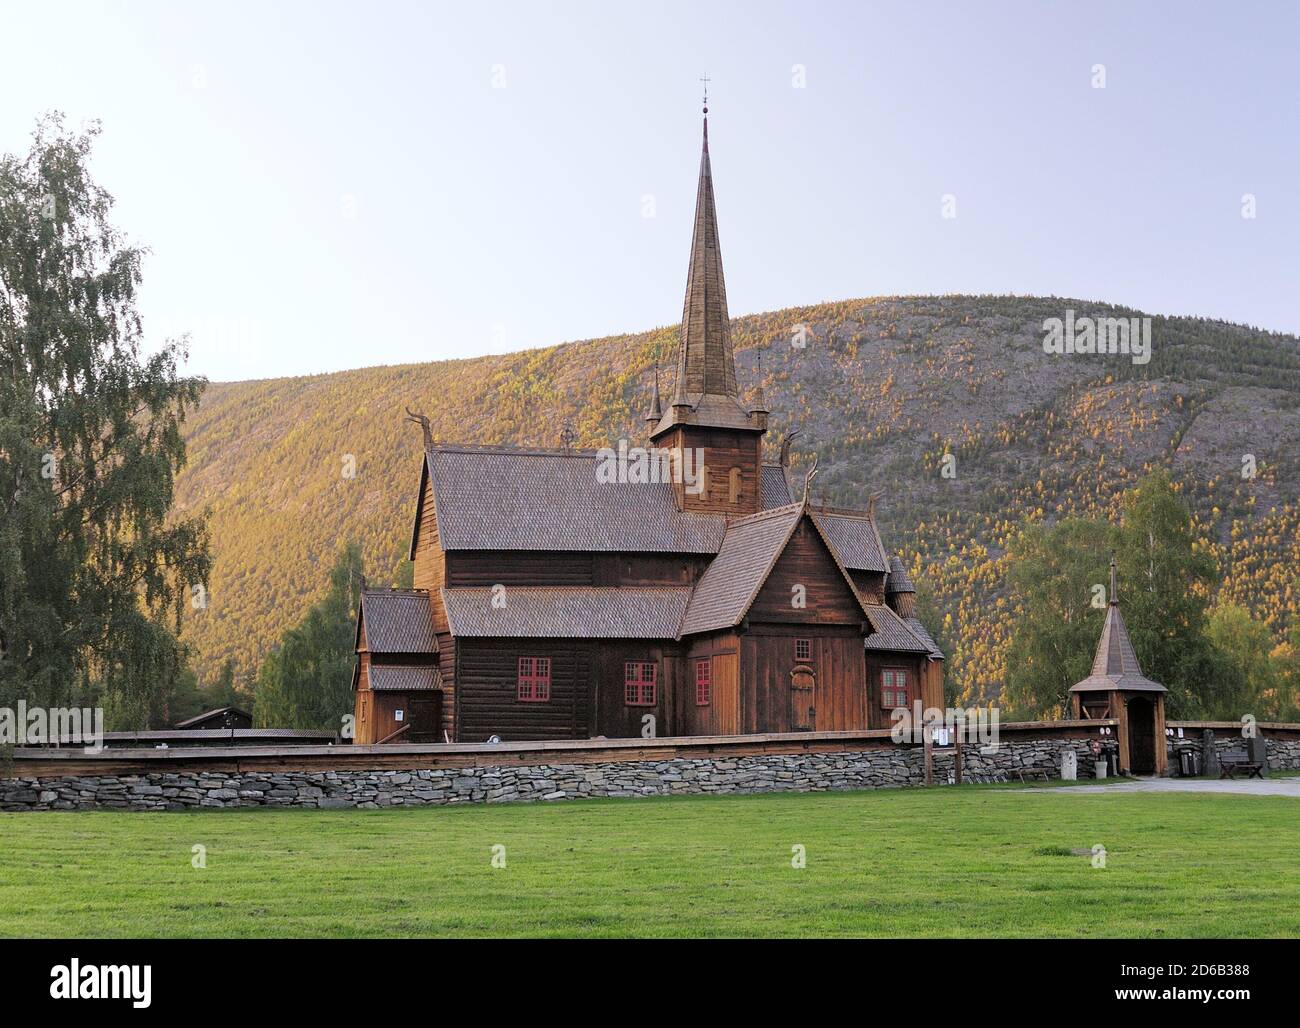 Belle église de la Stave en bois de LOM entourée par les montagnes et Arbres dans le parc national de Jotunheimen lors D'UNE journée ensoleillée d'été Avec UN ciel bleu clair Banque D'Images